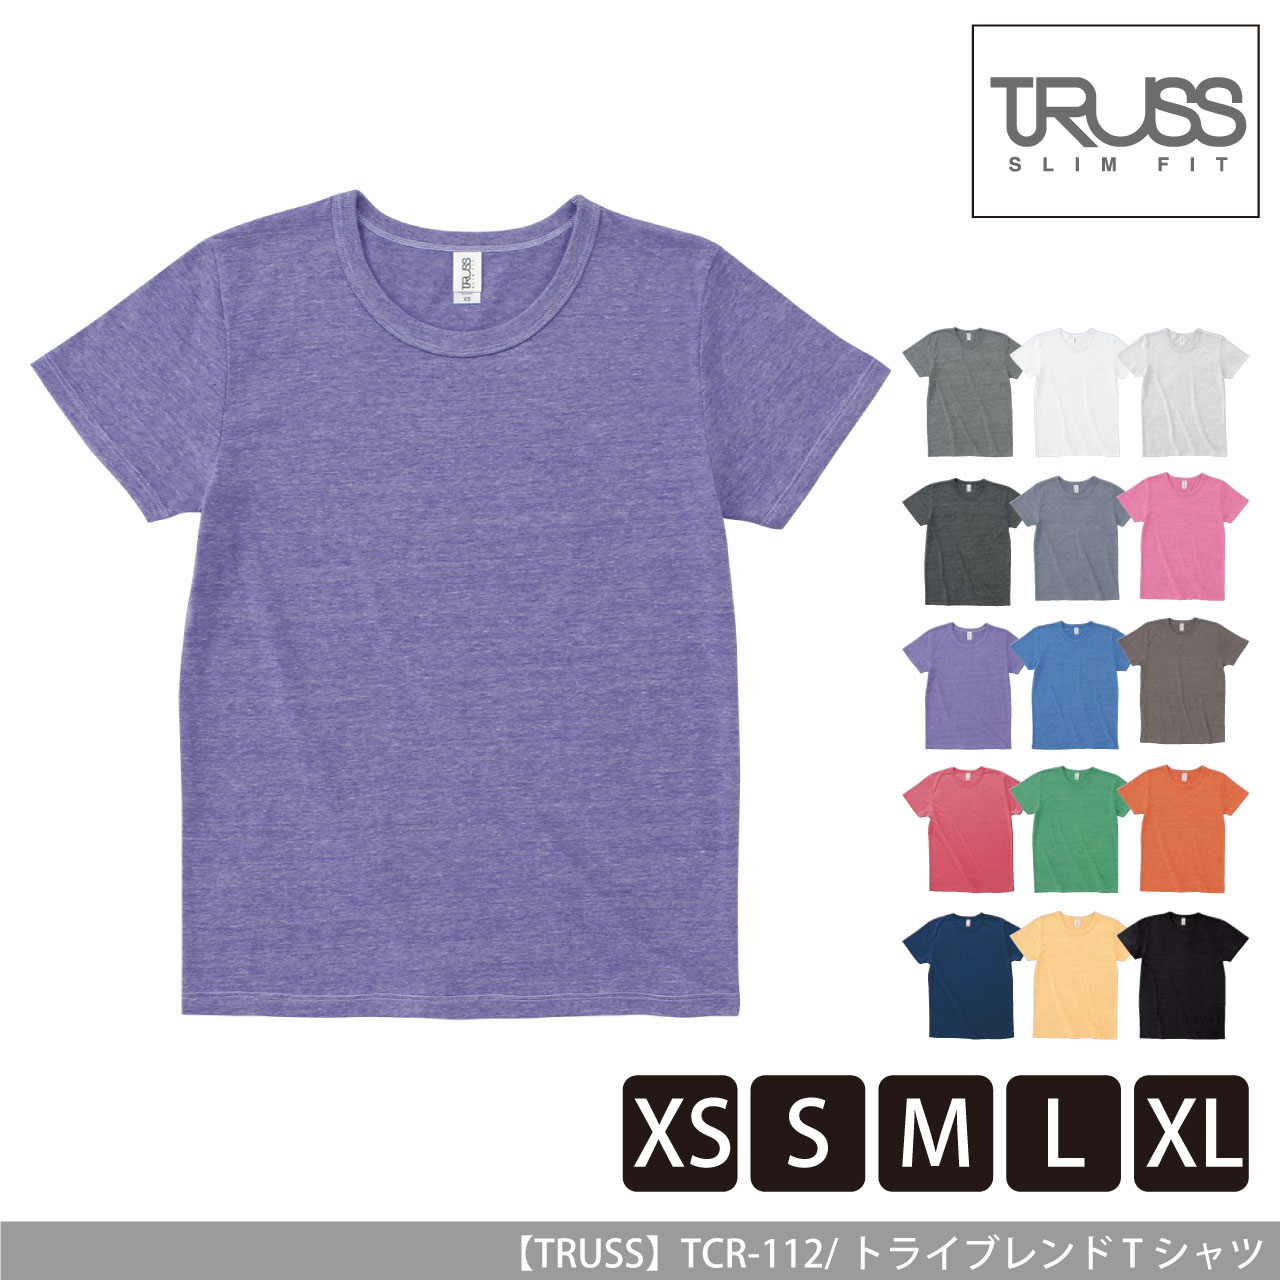 着心地滑らからなトライブレンドTシャツ 【TRUSS】 TCR-112